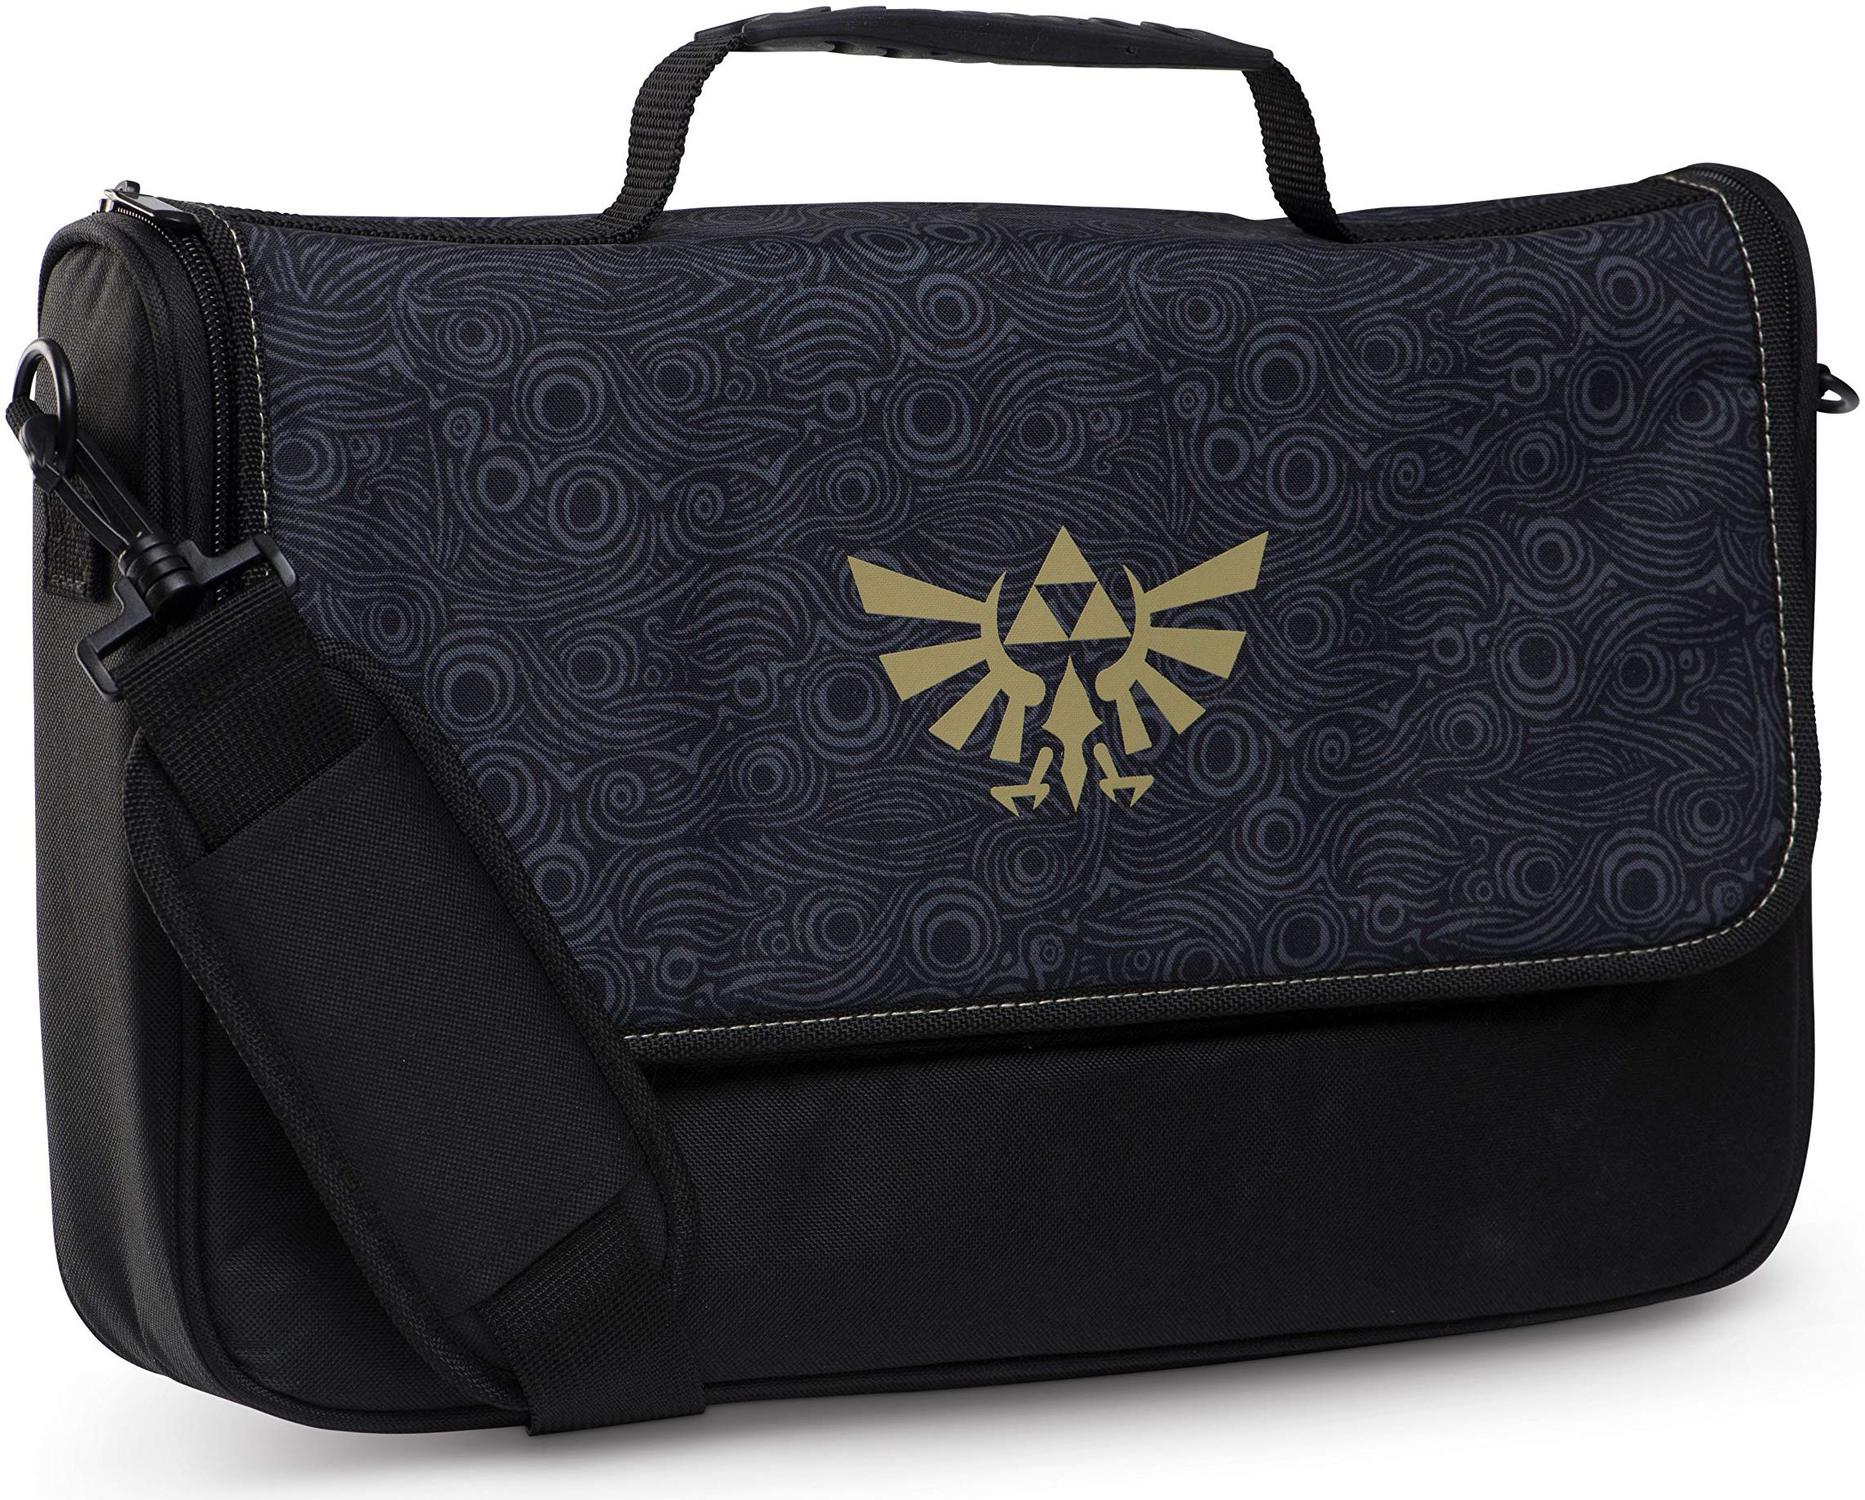 Zelda Messenger Bag